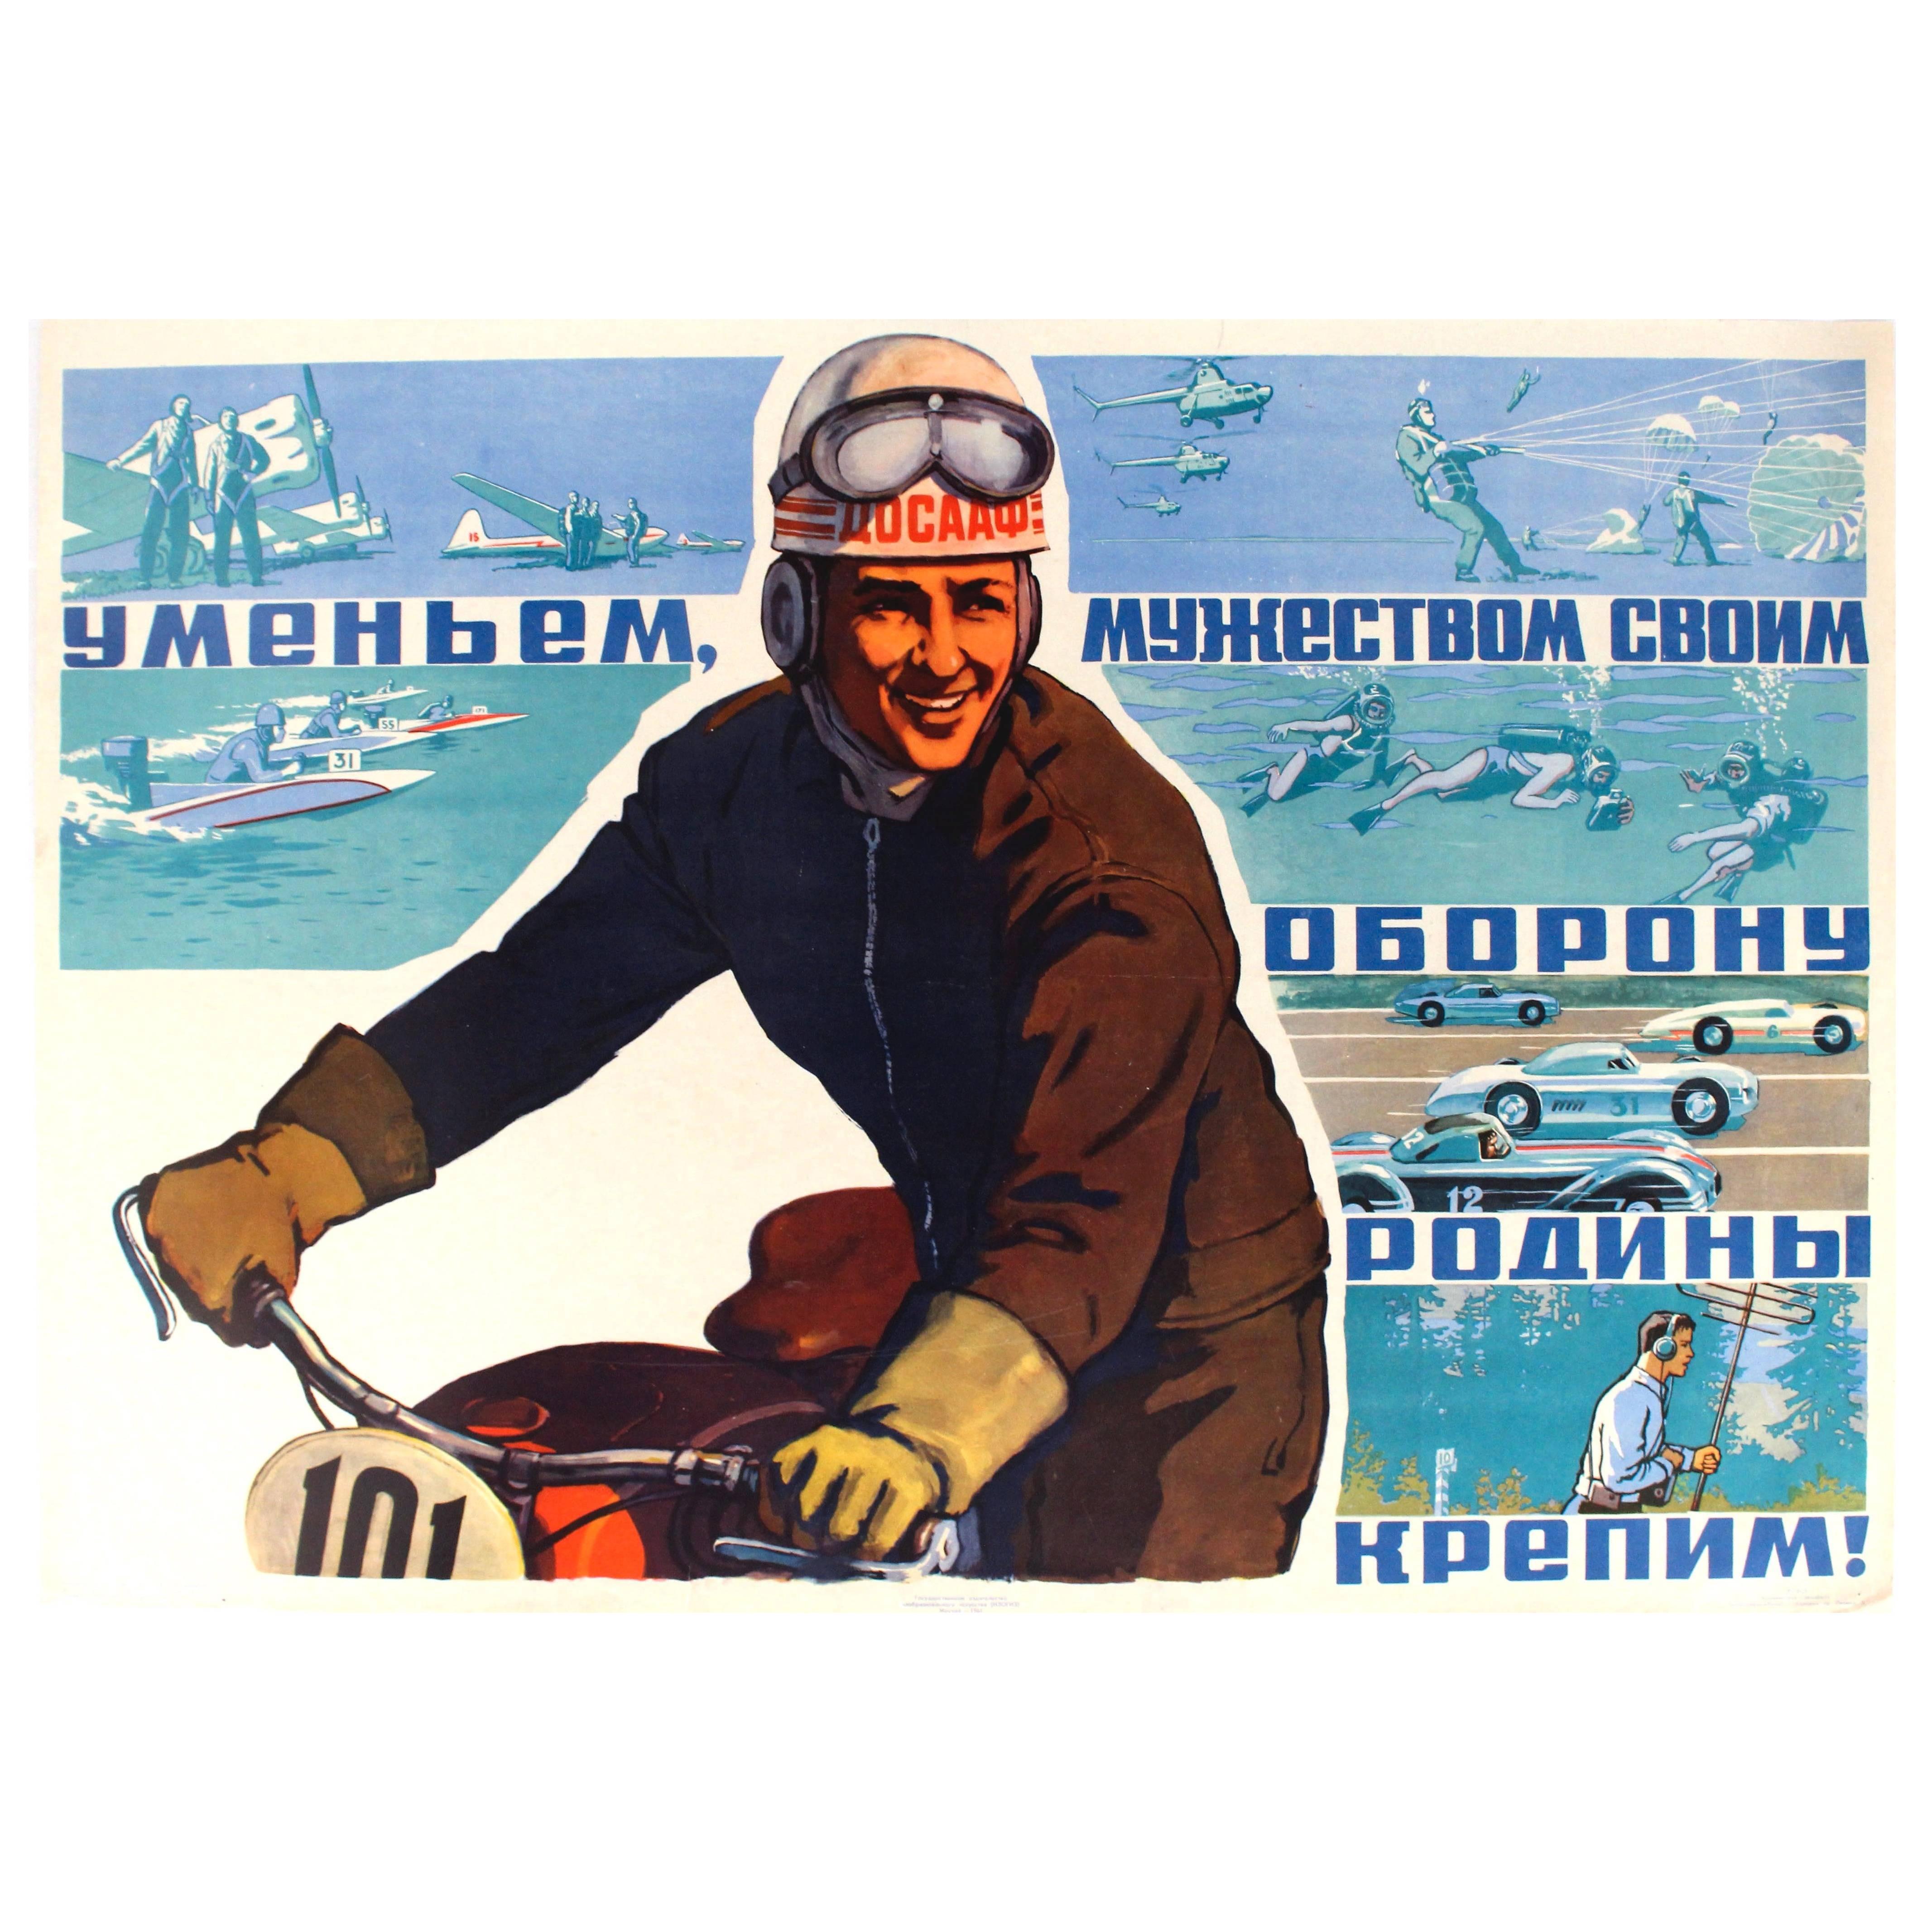 Affiche sportive rétro originale soviétique présentant des courses de voitures et des sauts en parachute